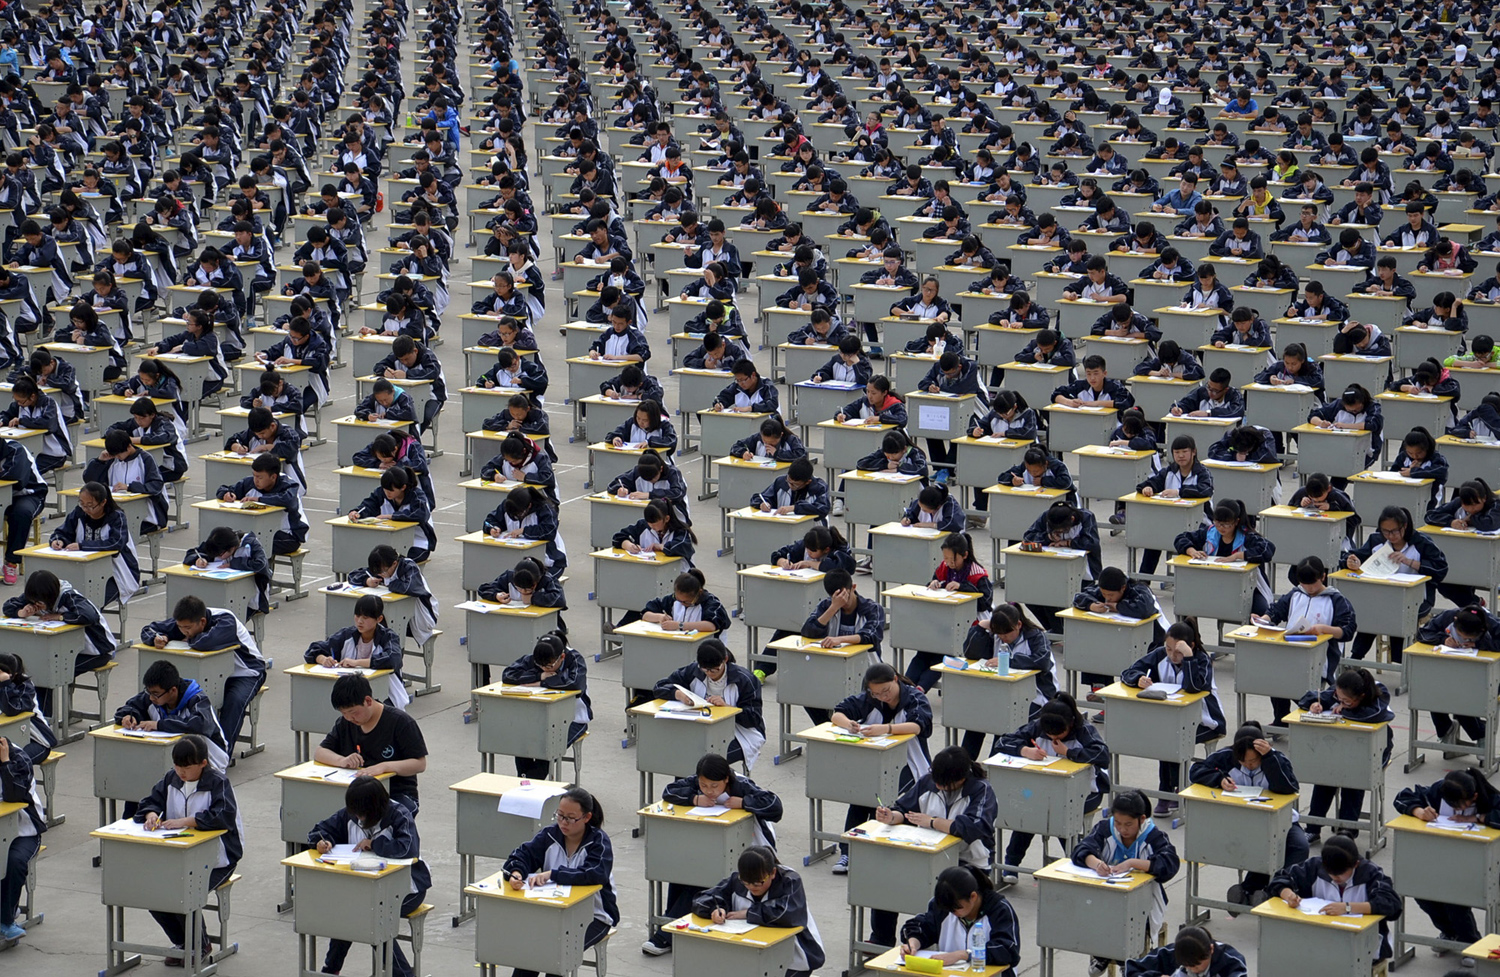 Ученици вземат изпит kd открита площадка в гимназията в Yichuan, провинция Шанси, на 11 април 2015 г. повече от 1700 първокурсници студенти взr;dj участие в изпита, който е първият опит на училището, да бъде взет в открито. Училището обеснява , че причината се дължи на недостатъчното вътрешно пространство, а също и, че това може да бъде тест за организизационния капацитета на студентите.